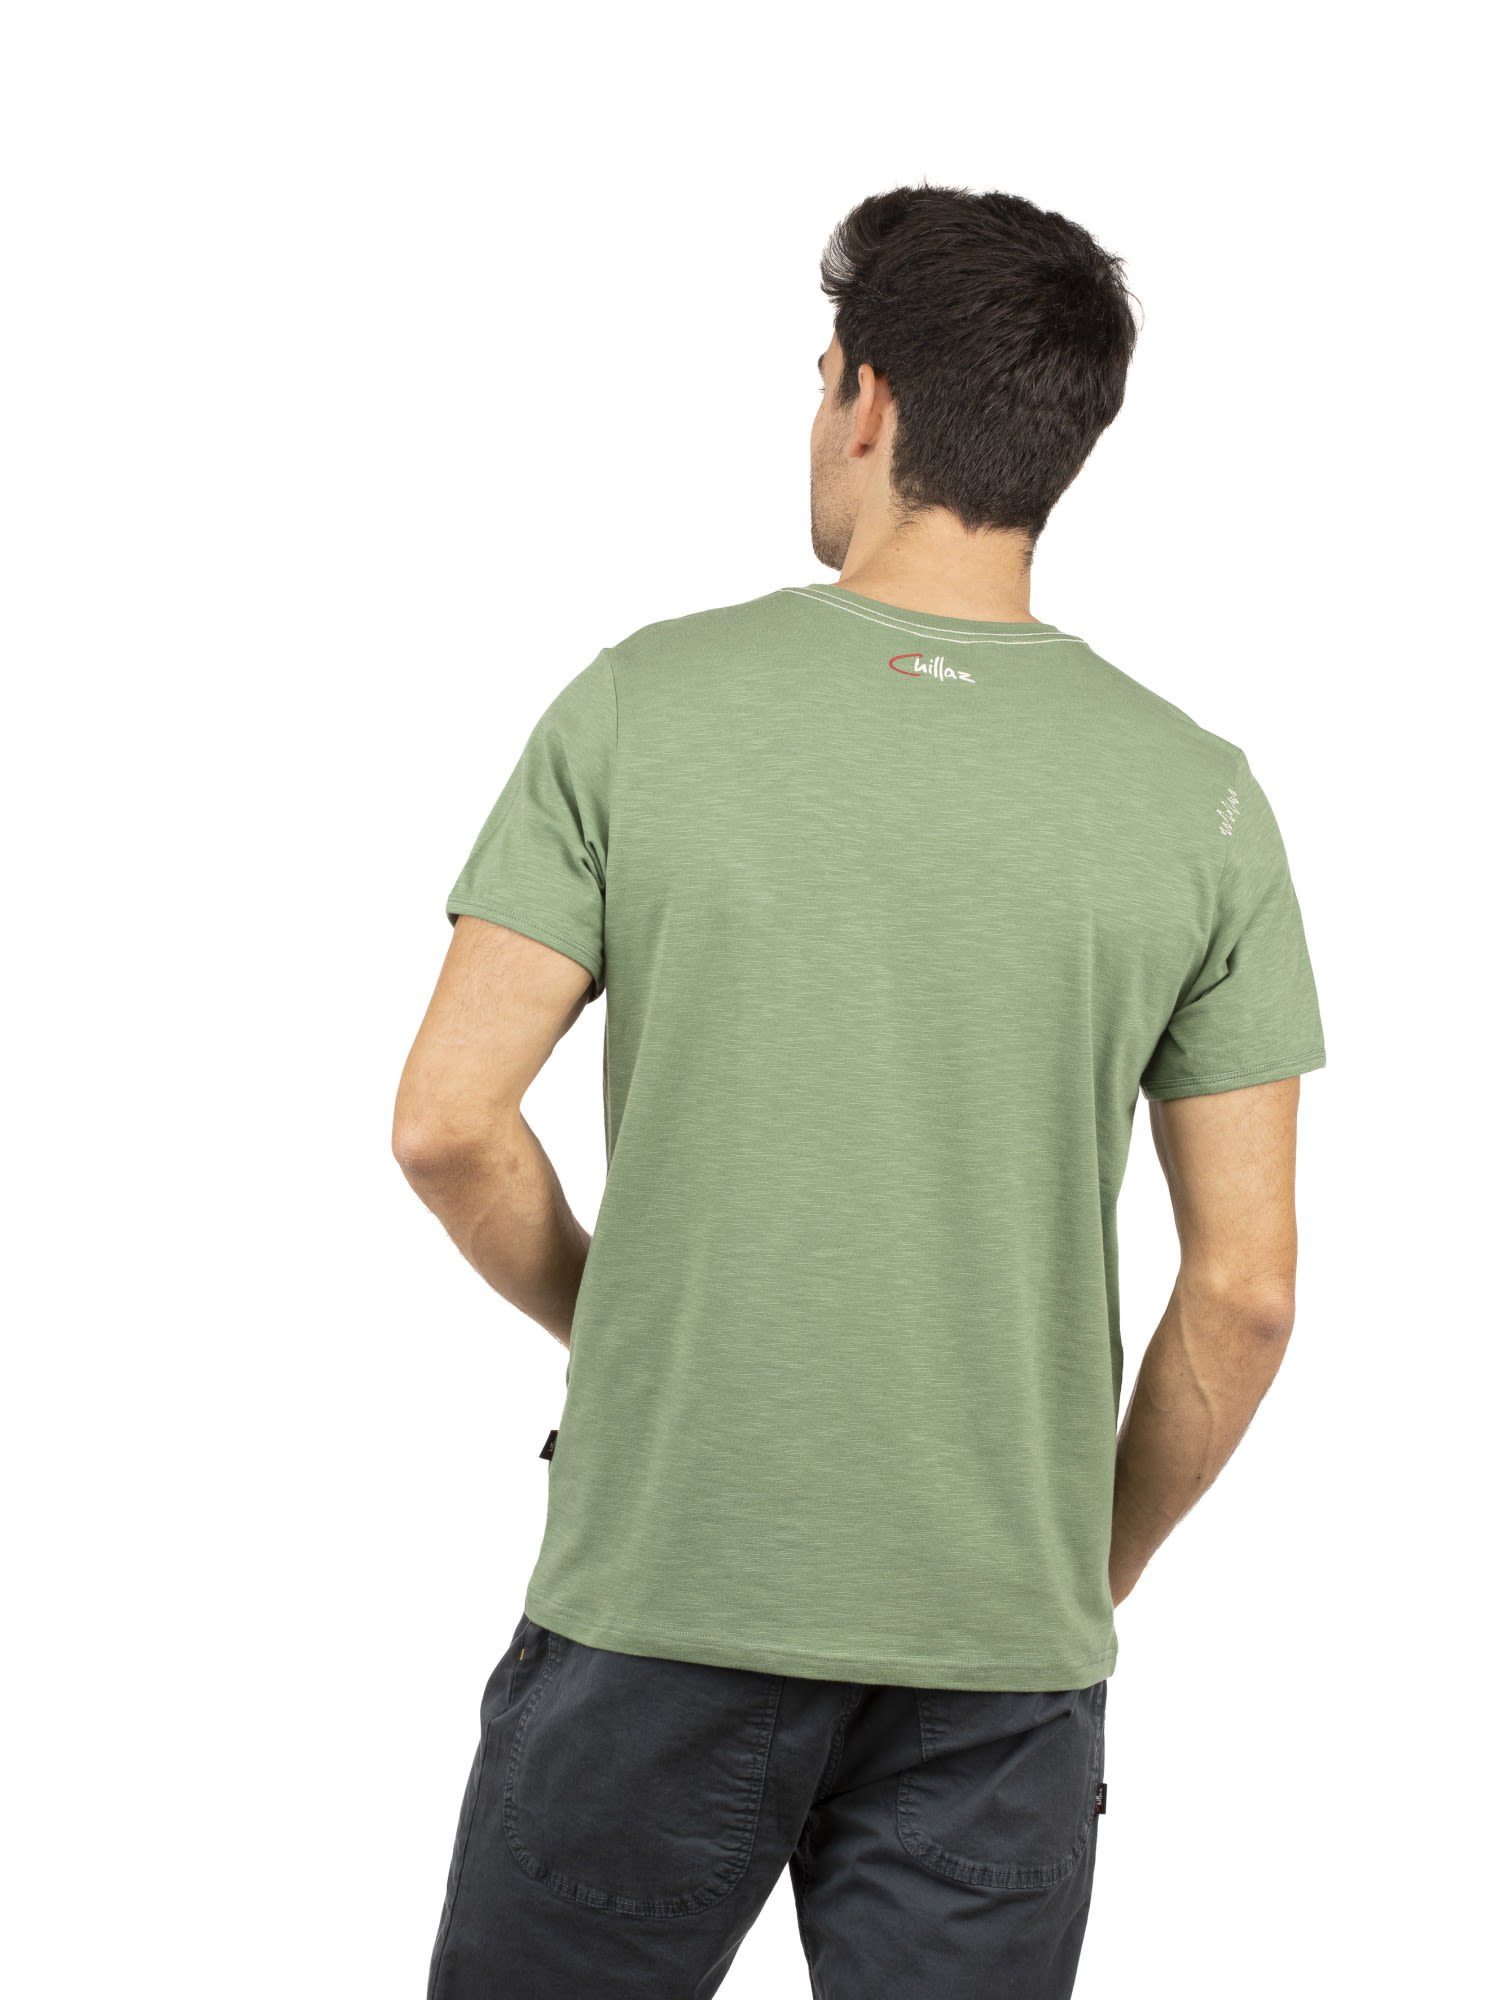 M Chillaz Chillaz Velo Green T-shirt Mons Light Homo T-Shirt Herren